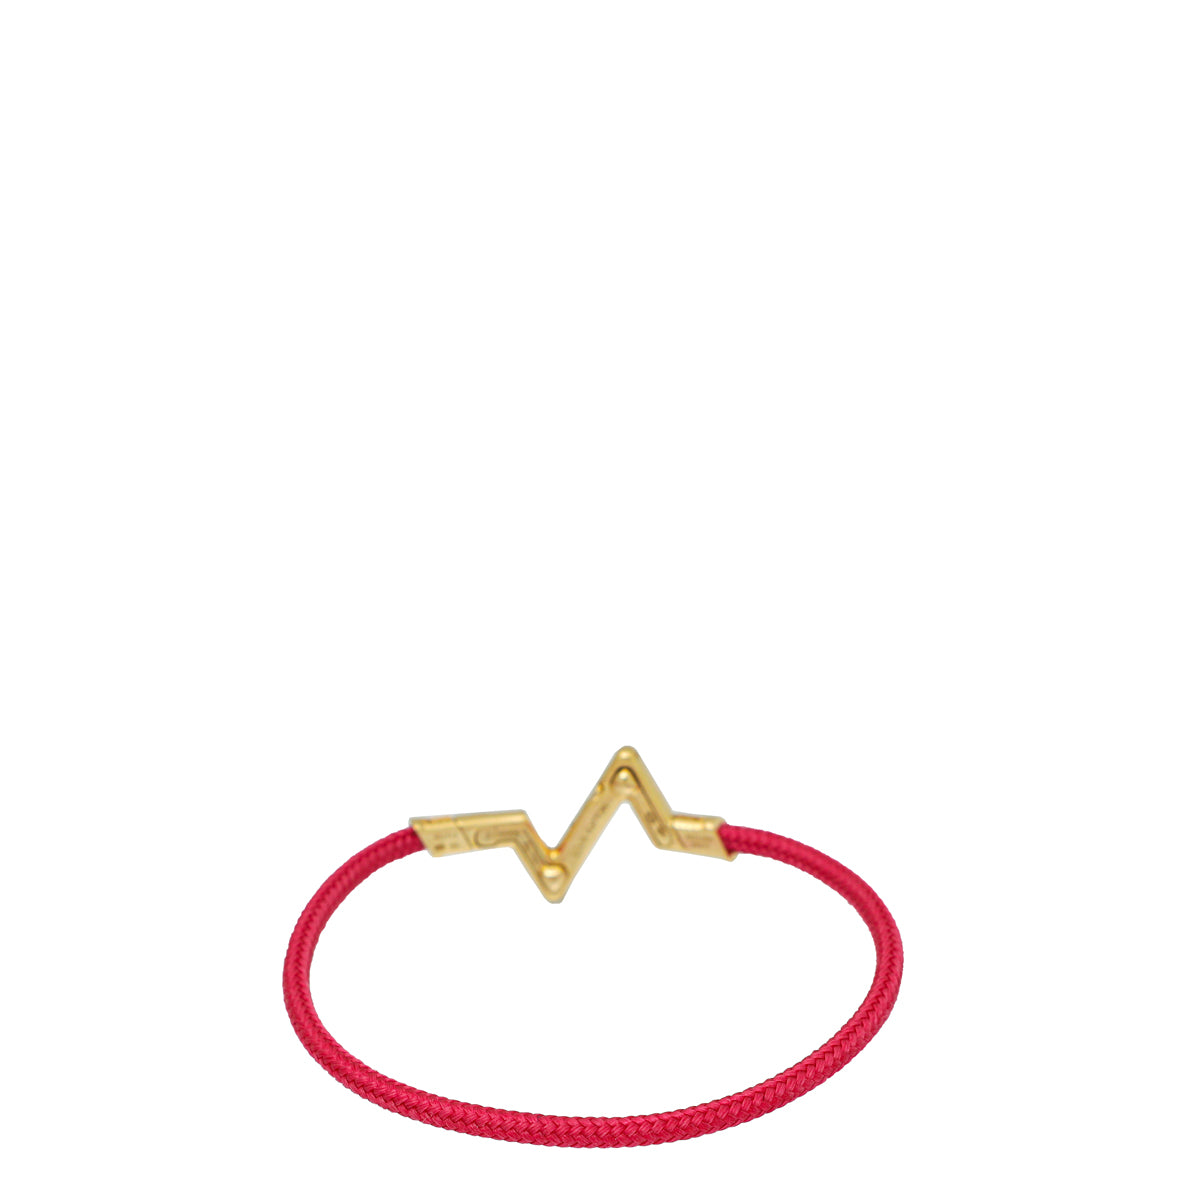 Louis Vuitton LV Volt Upside Down Bracelet, Yellow Gold Gold. Size S